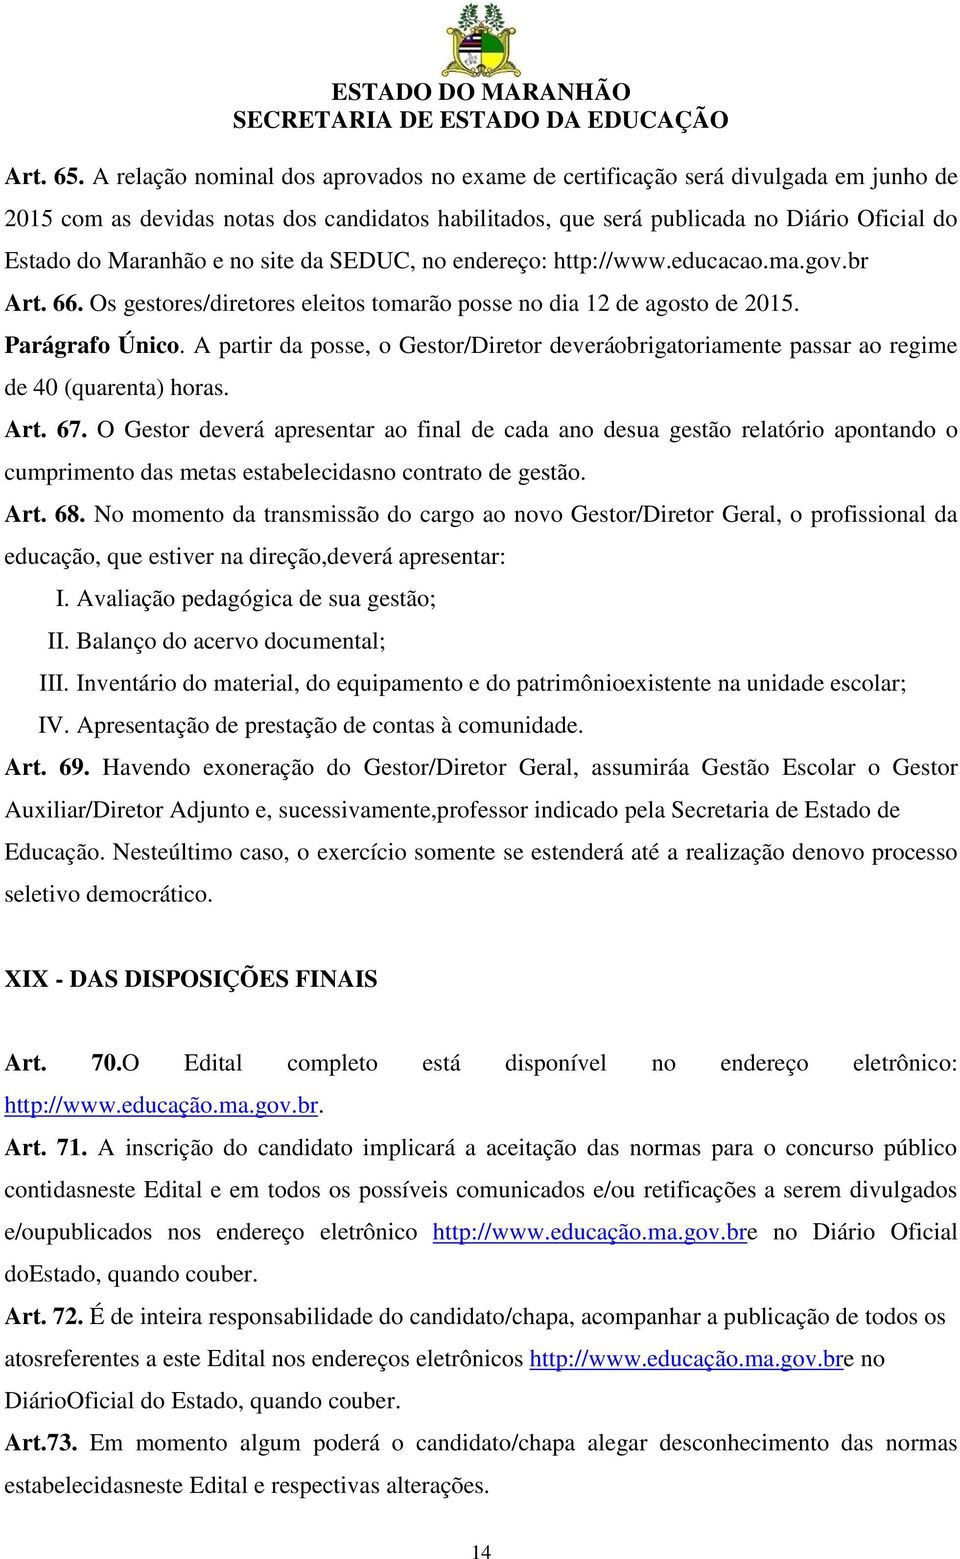 no site da SEDUC, no endereço: http://www.educacao.ma.gov.br Art. 66. Os gestores/diretores eleitos tomarão posse no dia 12 de agosto de 2015. Parágrafo Único.